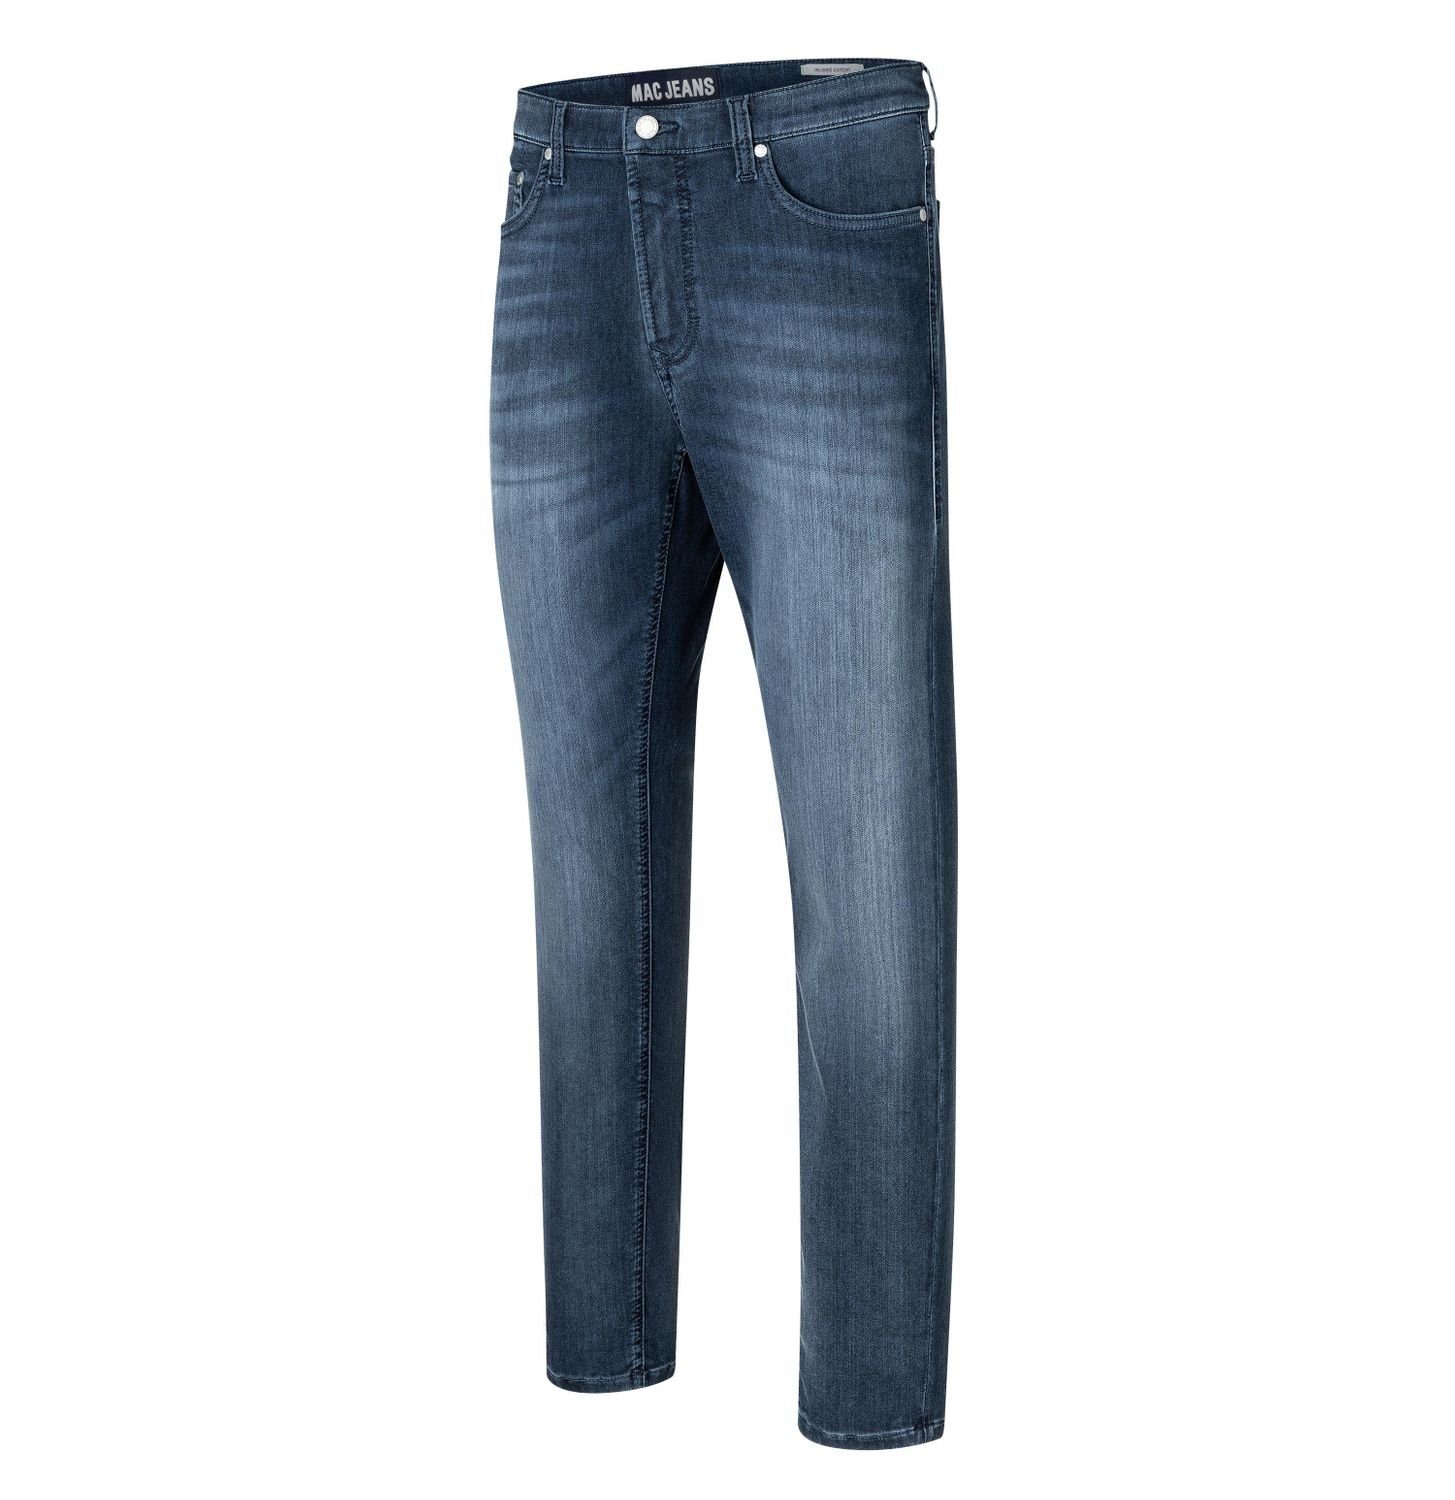 MAC Regular-fit-Jeans »GARVIN CYCLE Jog'n Flex Herren Jeans dark authentic  3D wash Art.Nr. 1994L665500 H593*« online kaufen | OTTO